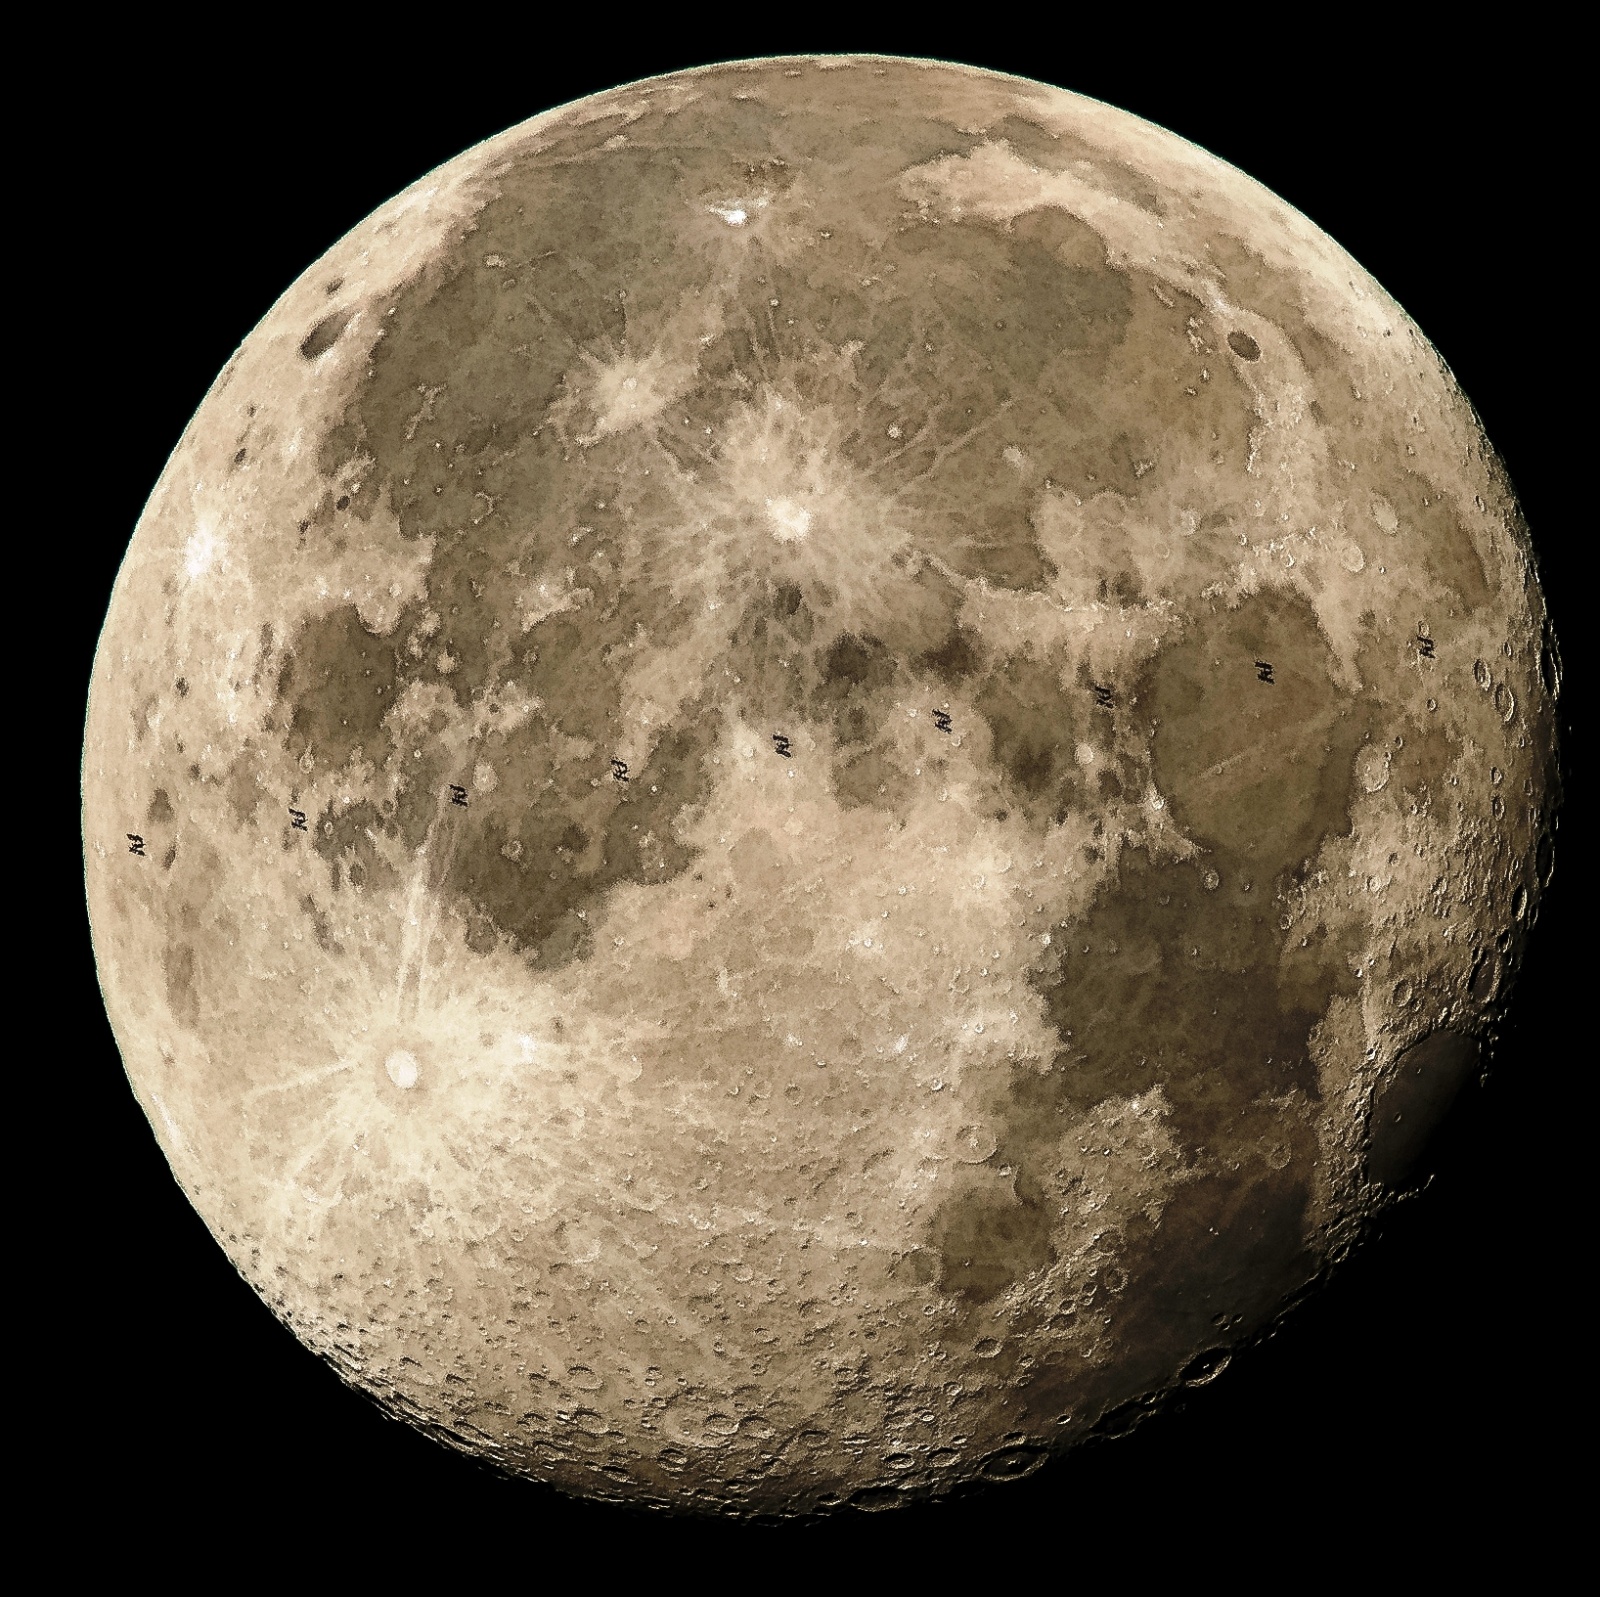 МКС проходит по диску Луны: фотография от NASA - 2